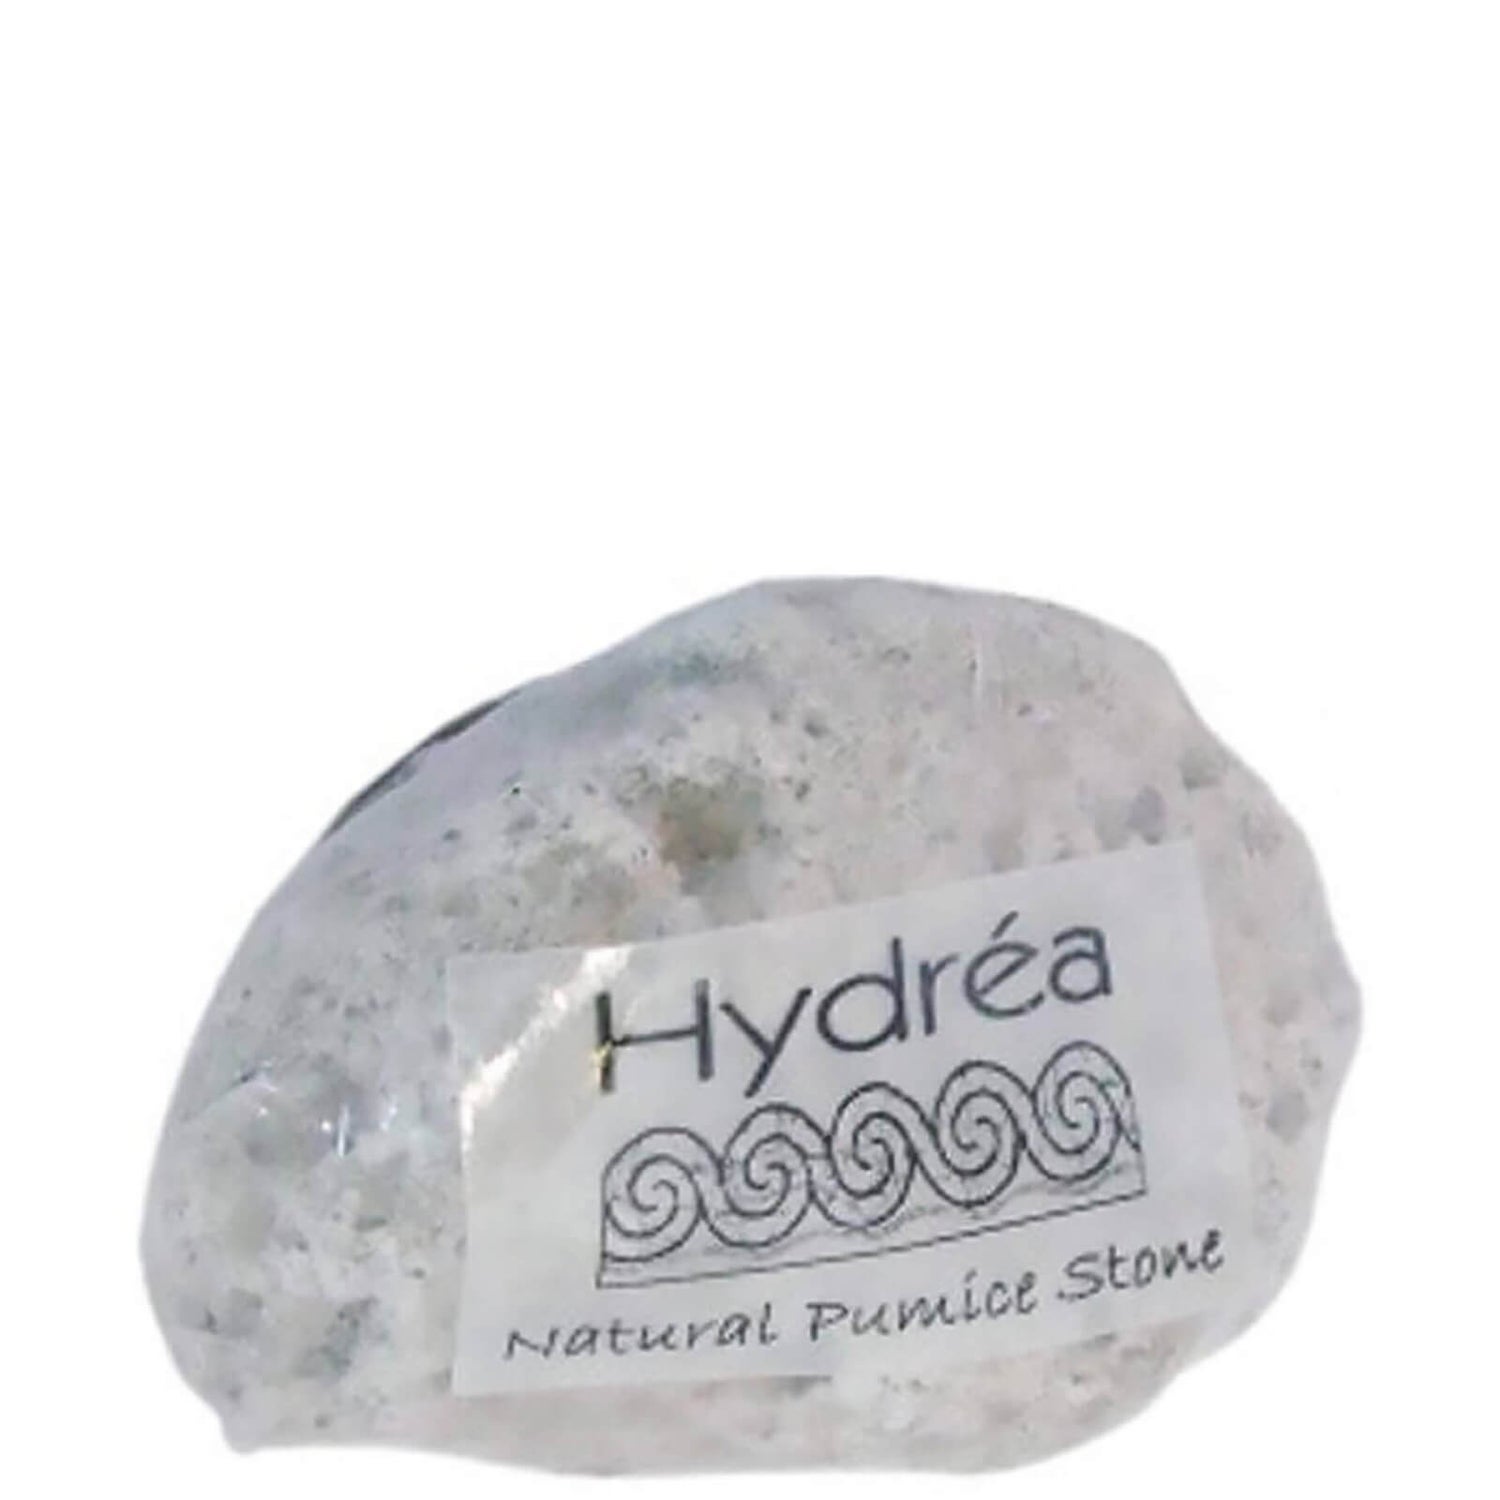 Натуральная пемза Hydrea London - Natural Pumice Stone